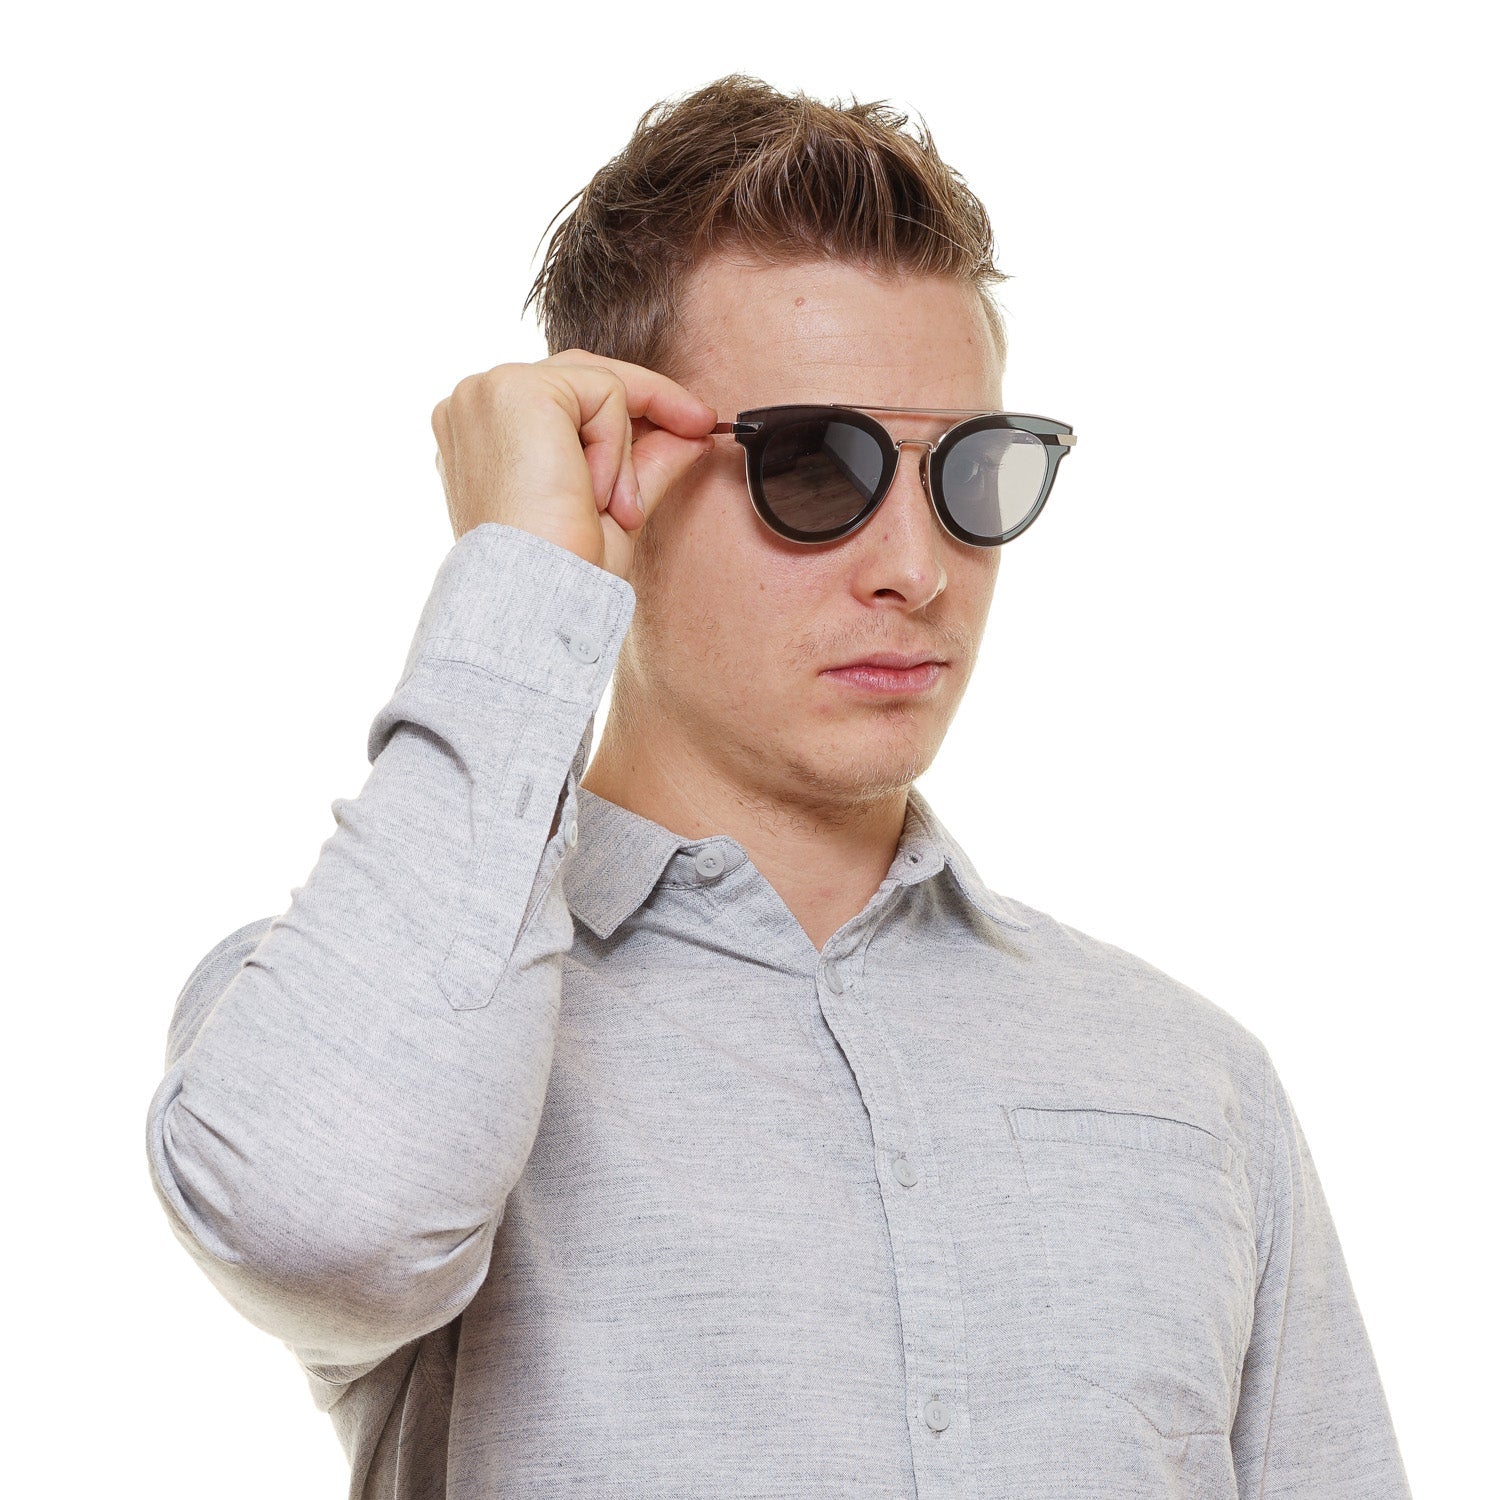 Police Silver Sunglasses for man - Fizigo